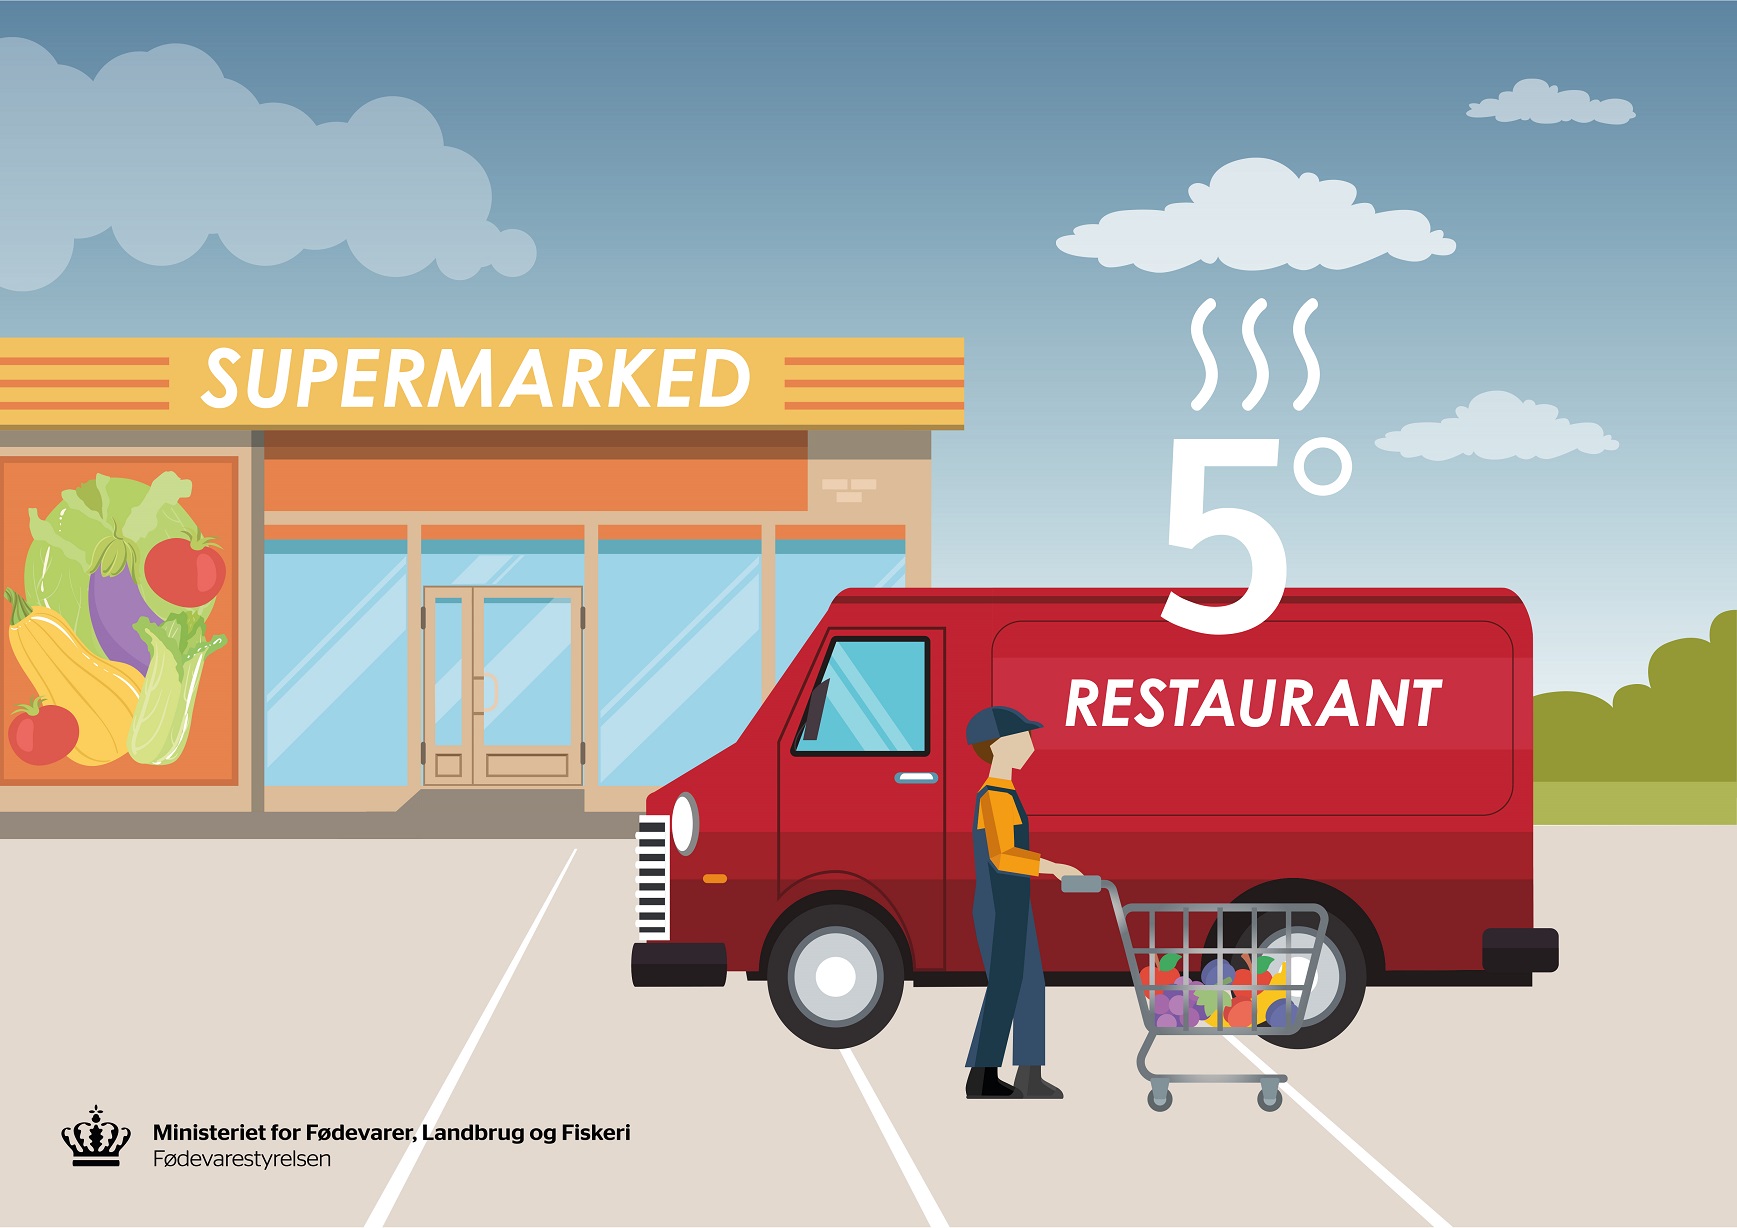 En illustration af et supermarked og en varevogn, der illustrerer mad fragtet ved for høje temperaturer